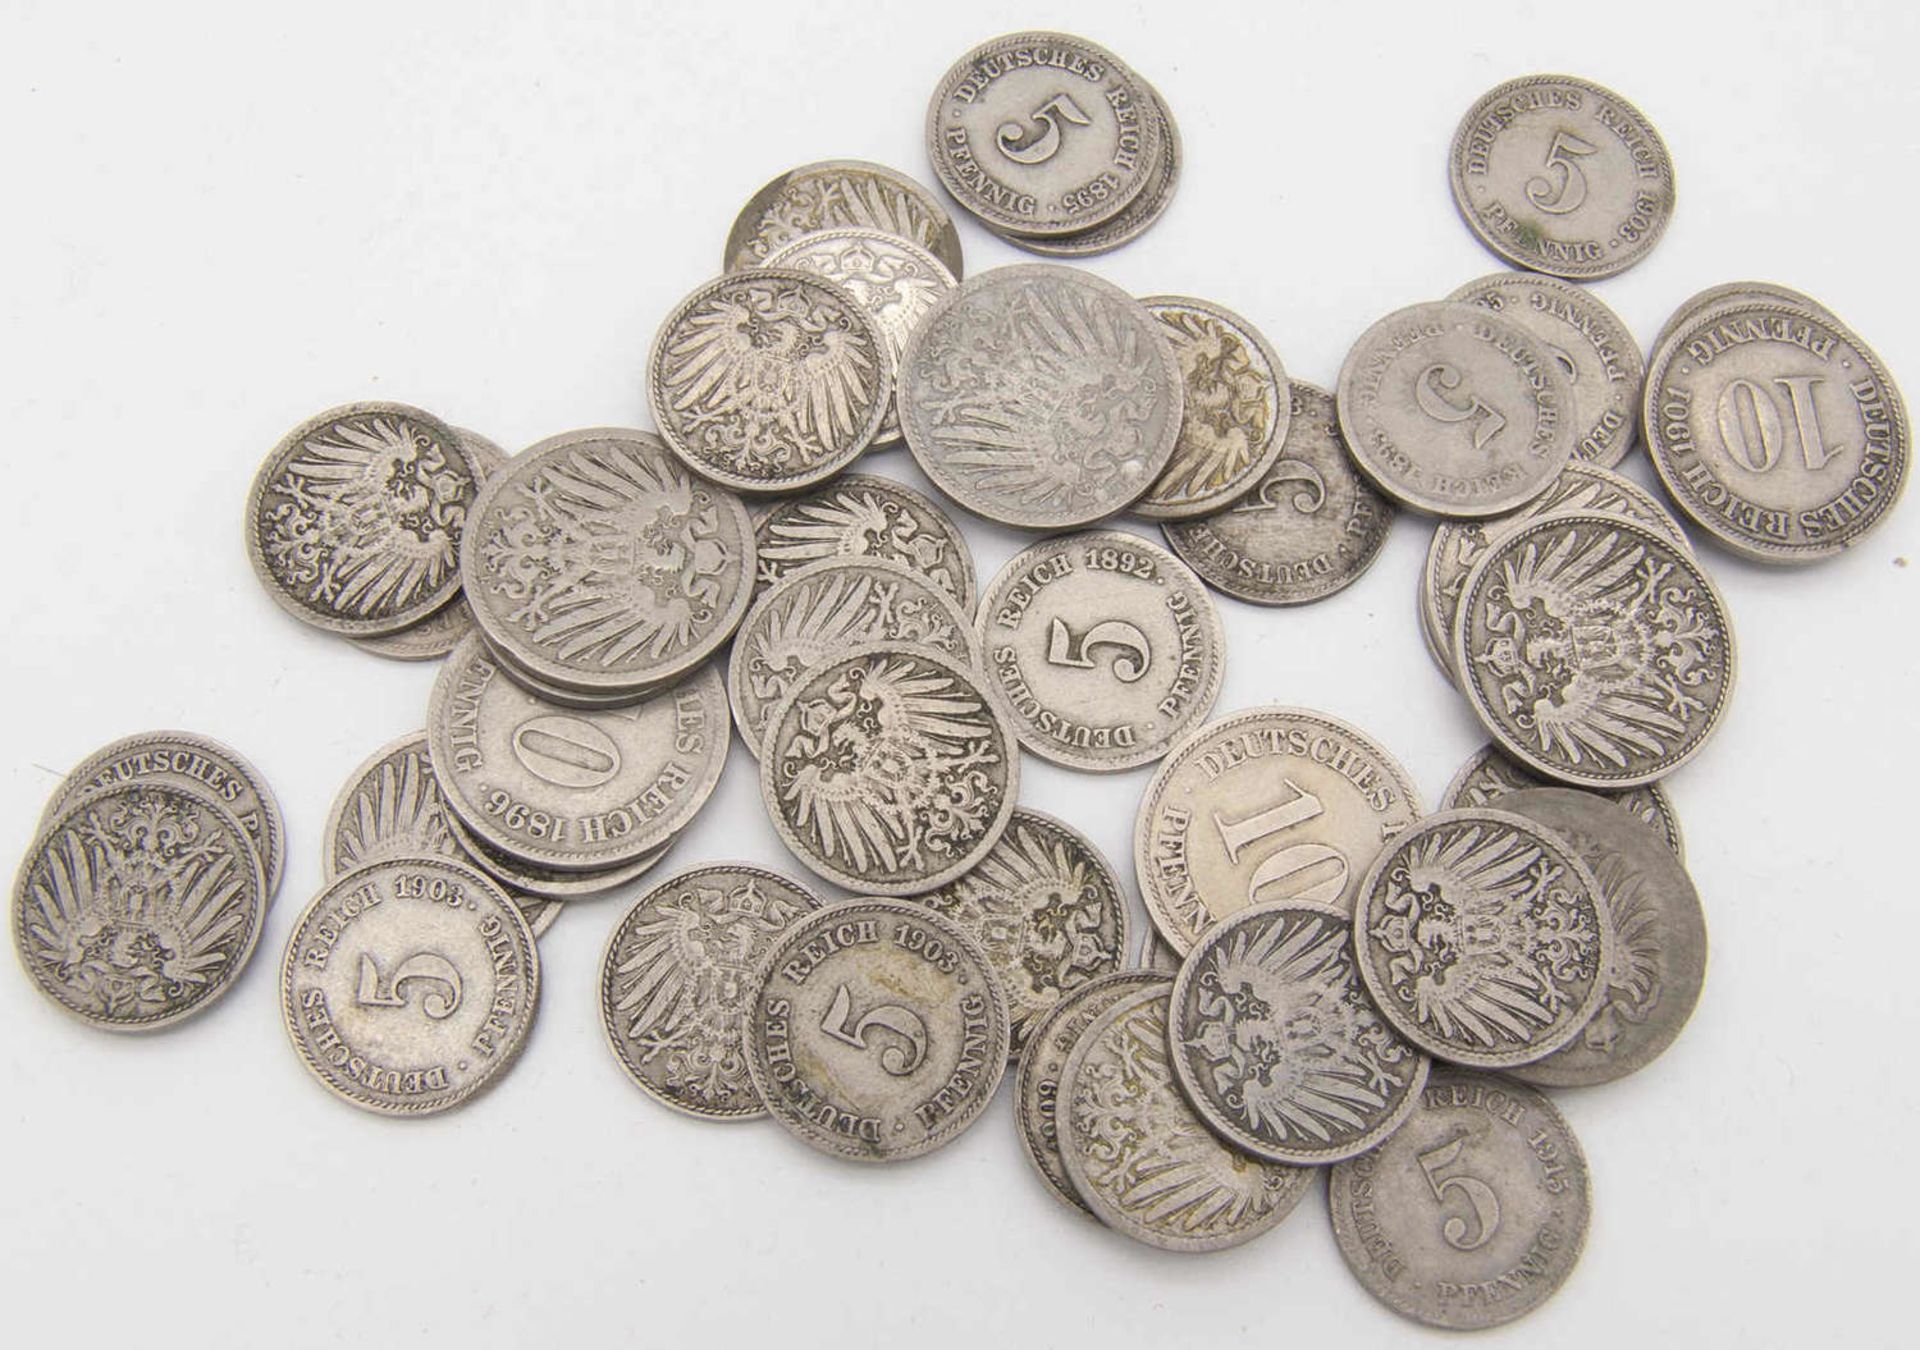 Deutsches Kaiserreich, Lot 5 Pfennig und 10 Pfennig - Münzen. Insgesamt 36 Stück 5 Pfennig und 8